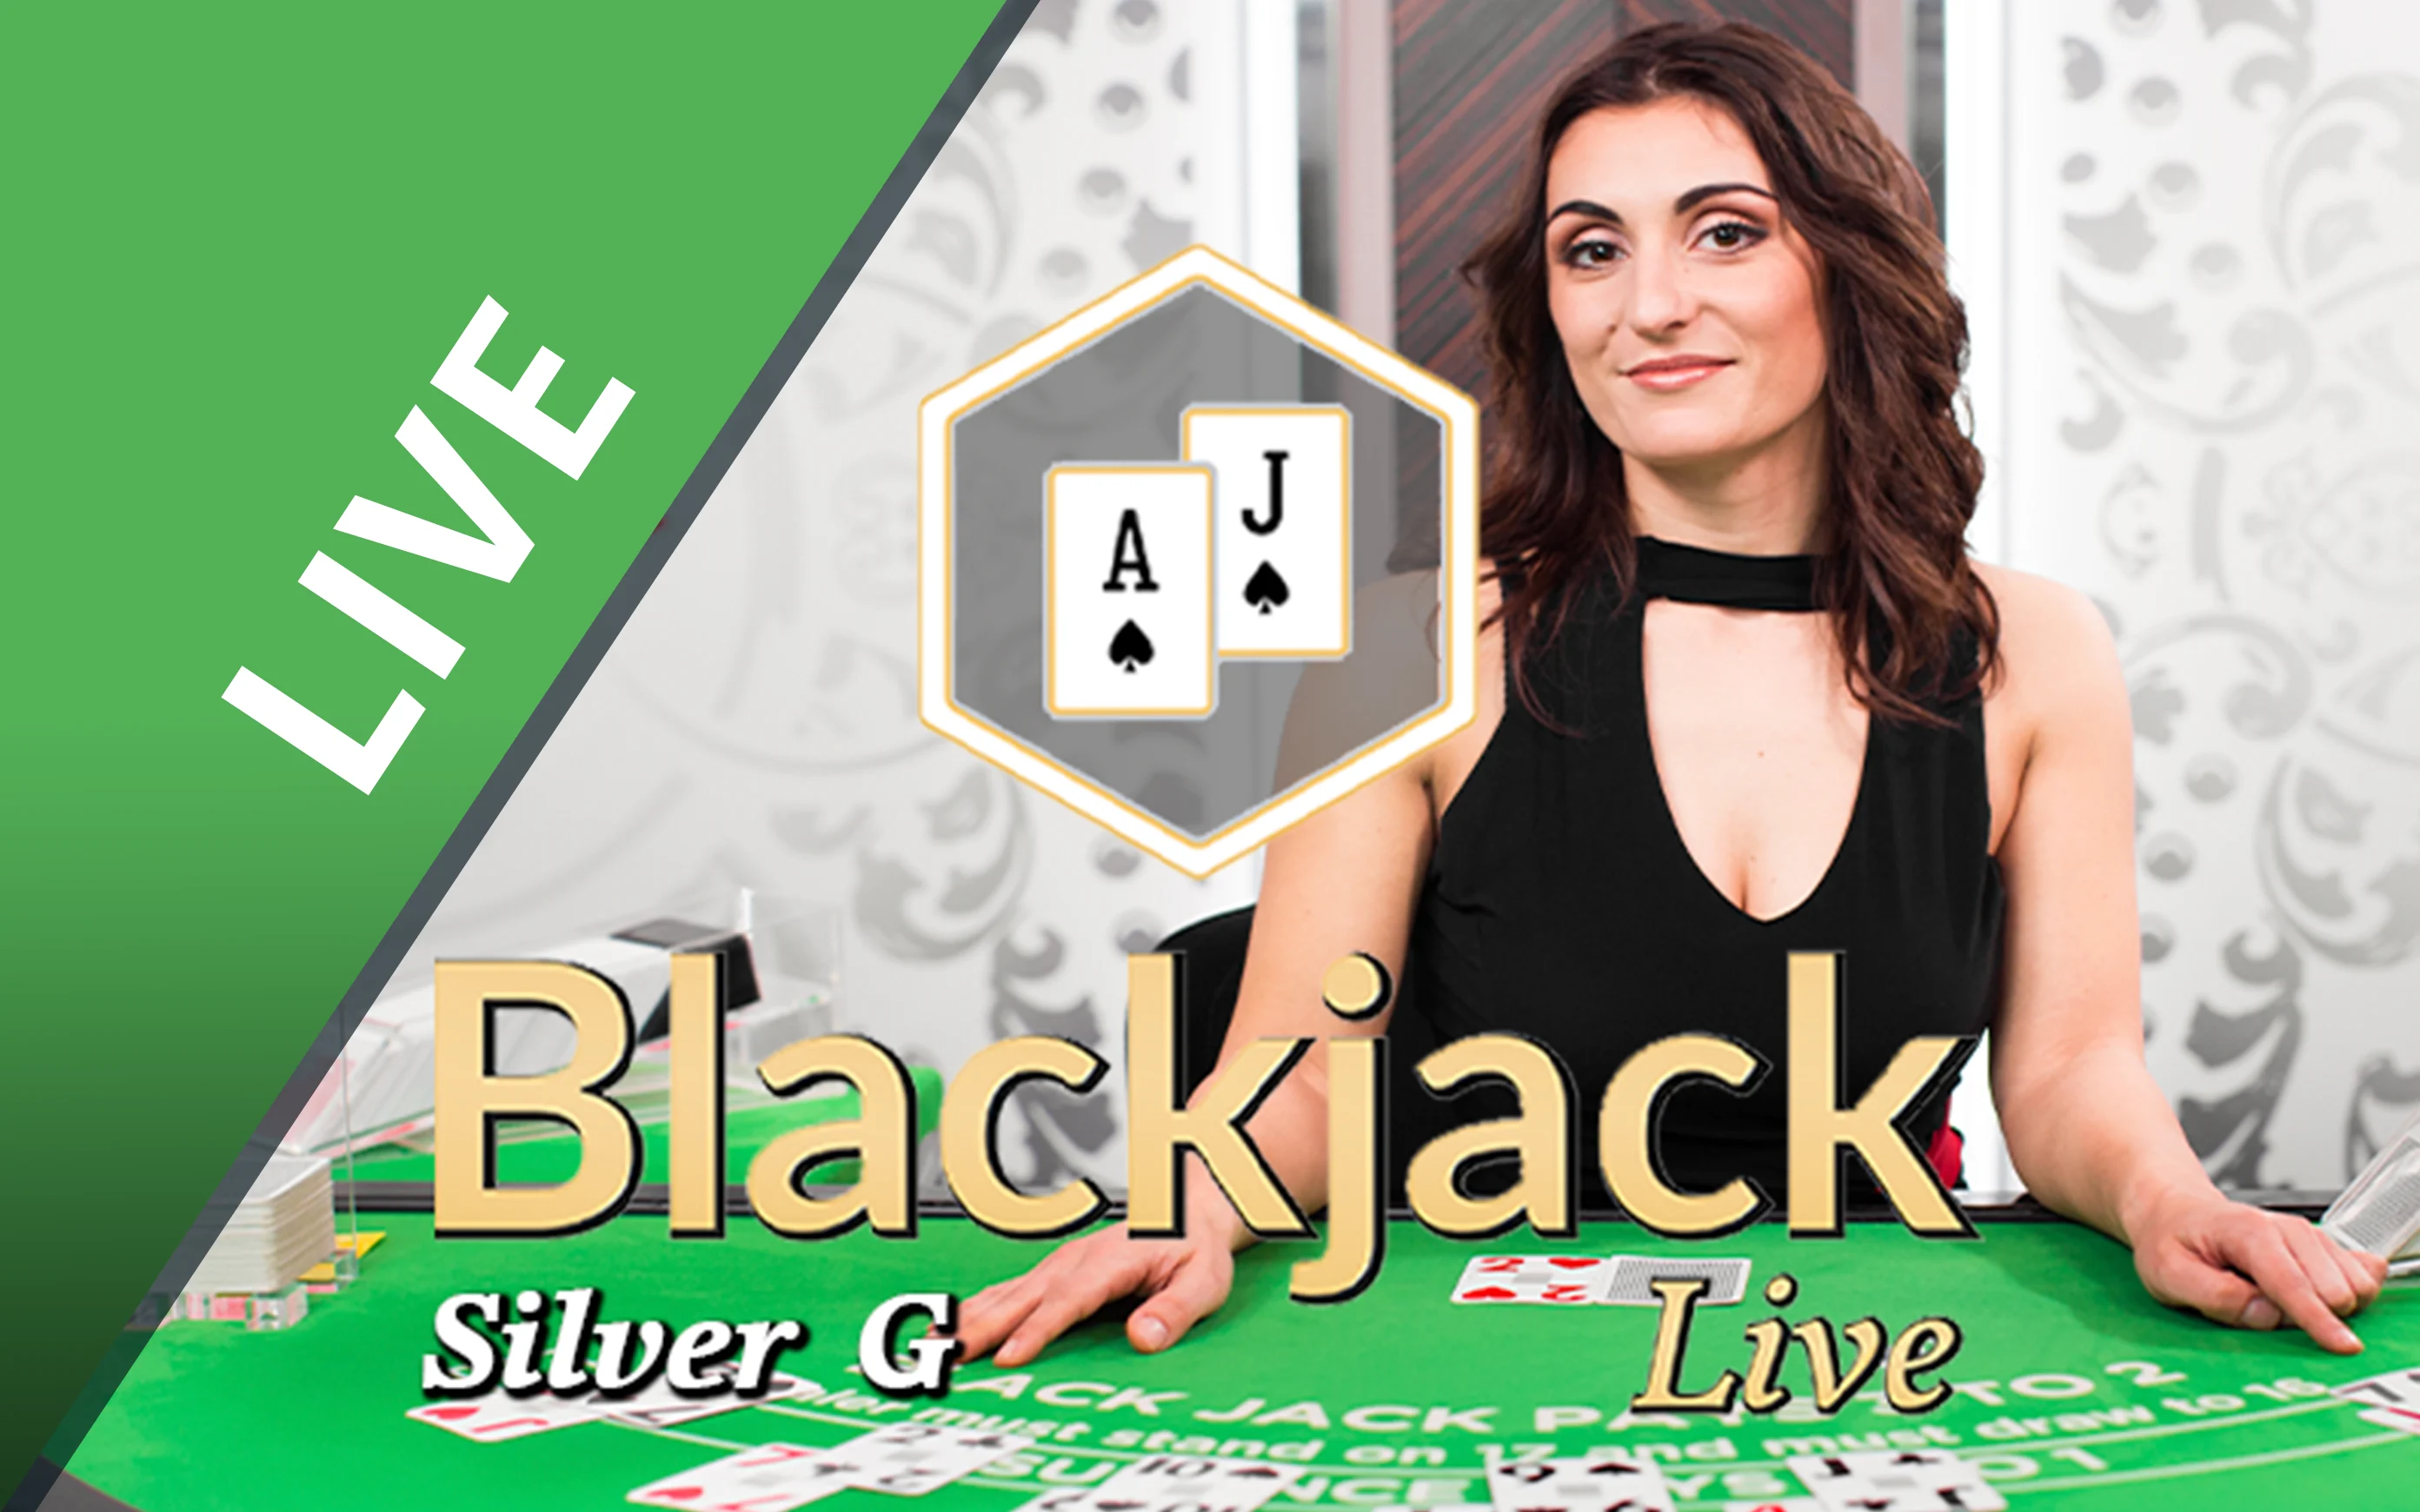 Juega a Blackjack Silver G en el casino en línea de Starcasino.be